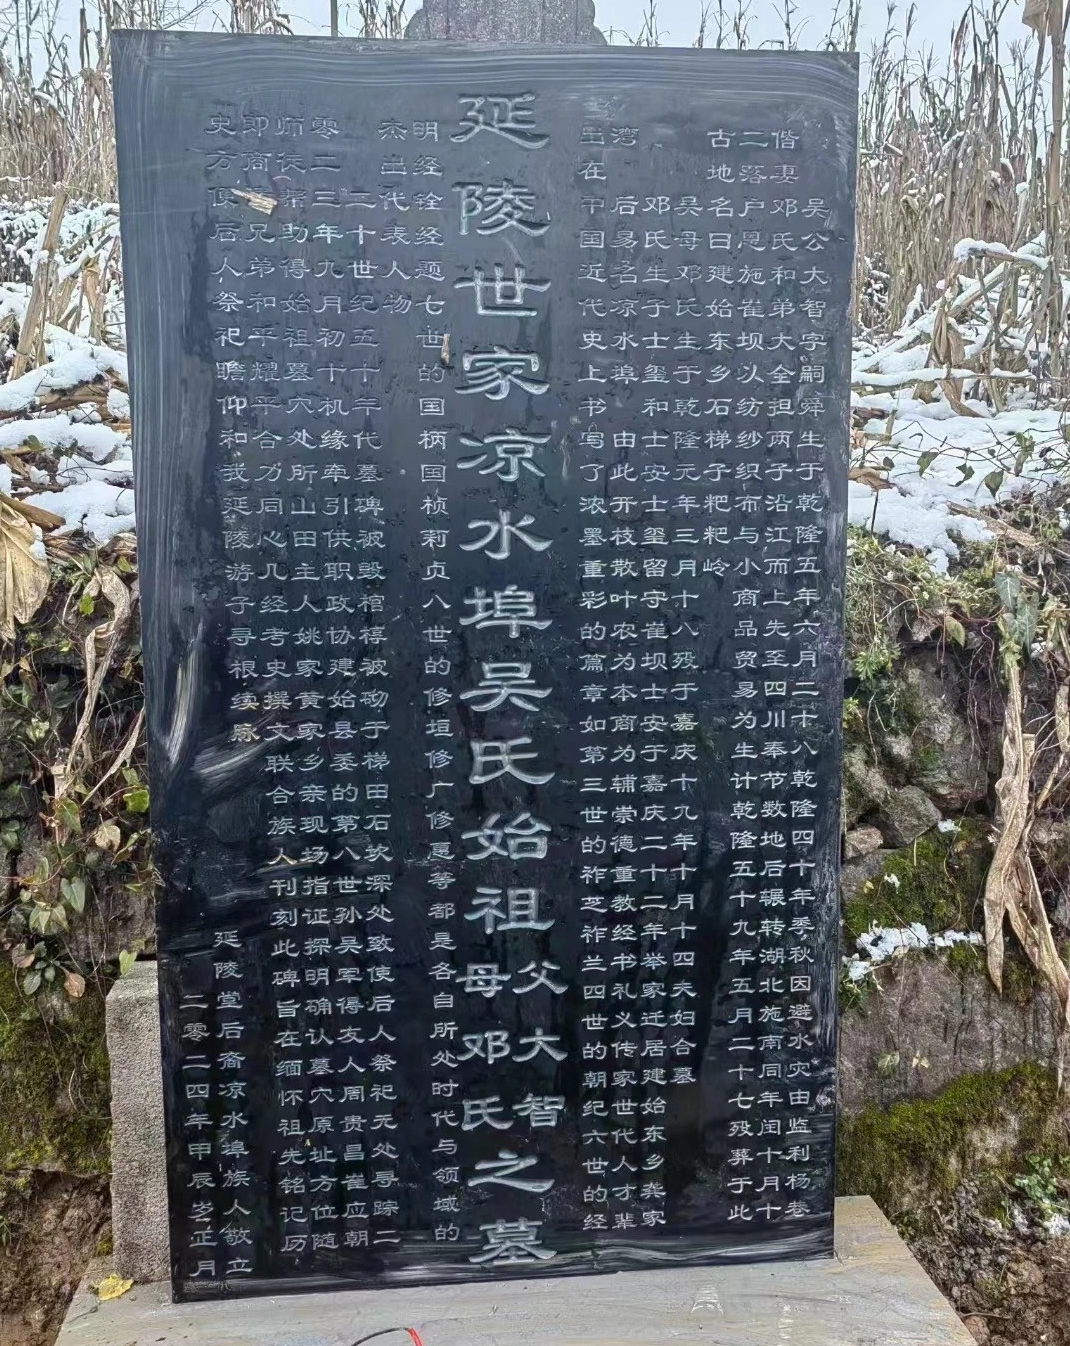 纪念凉水埠吴氏第一世祖大智公逝世230周年